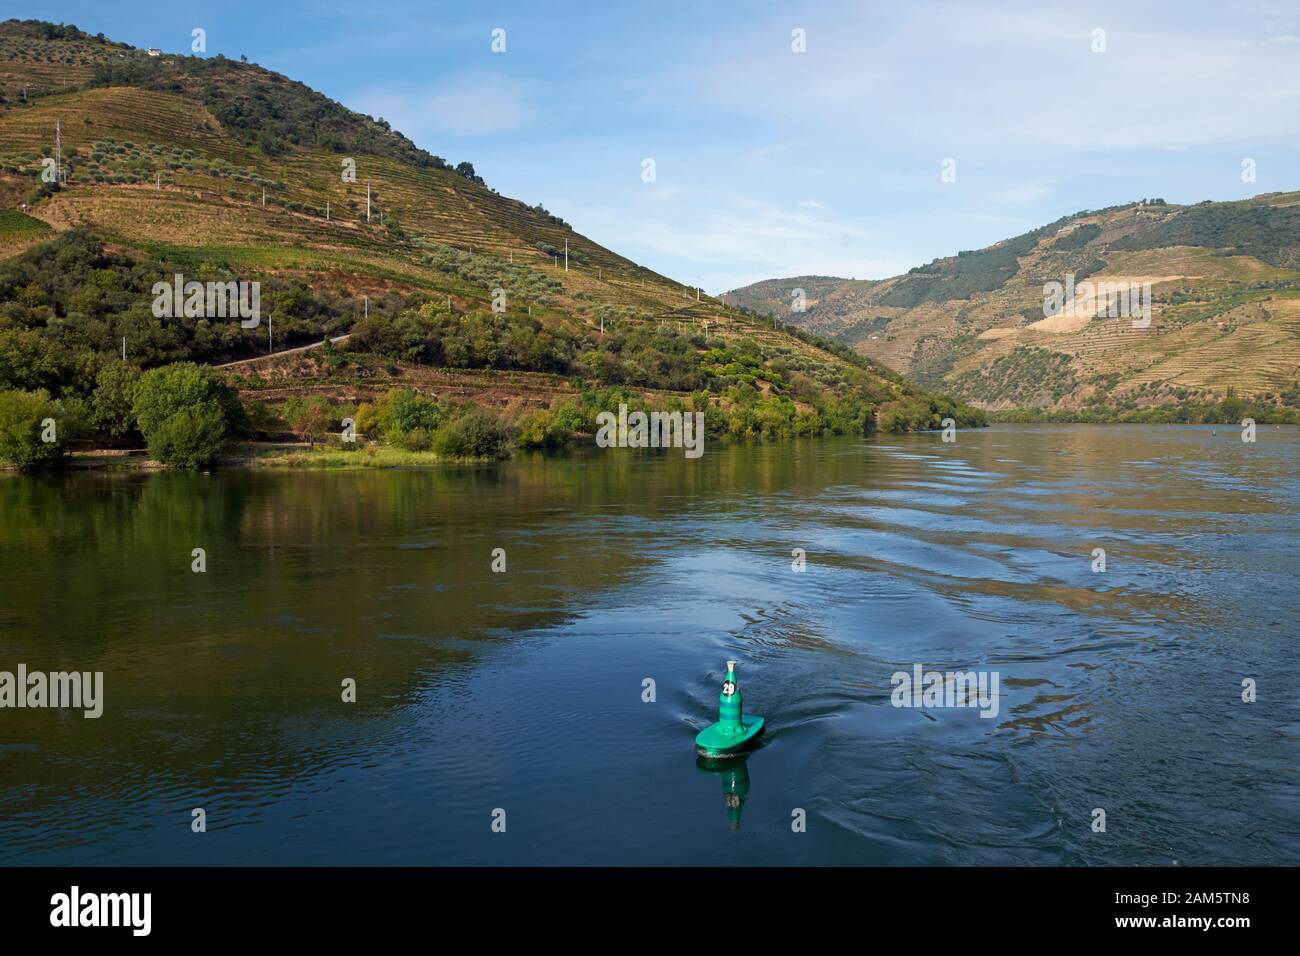 Eine grüne, flaschenförmige Boje am Fluss Douro, Portugal. Stockfoto